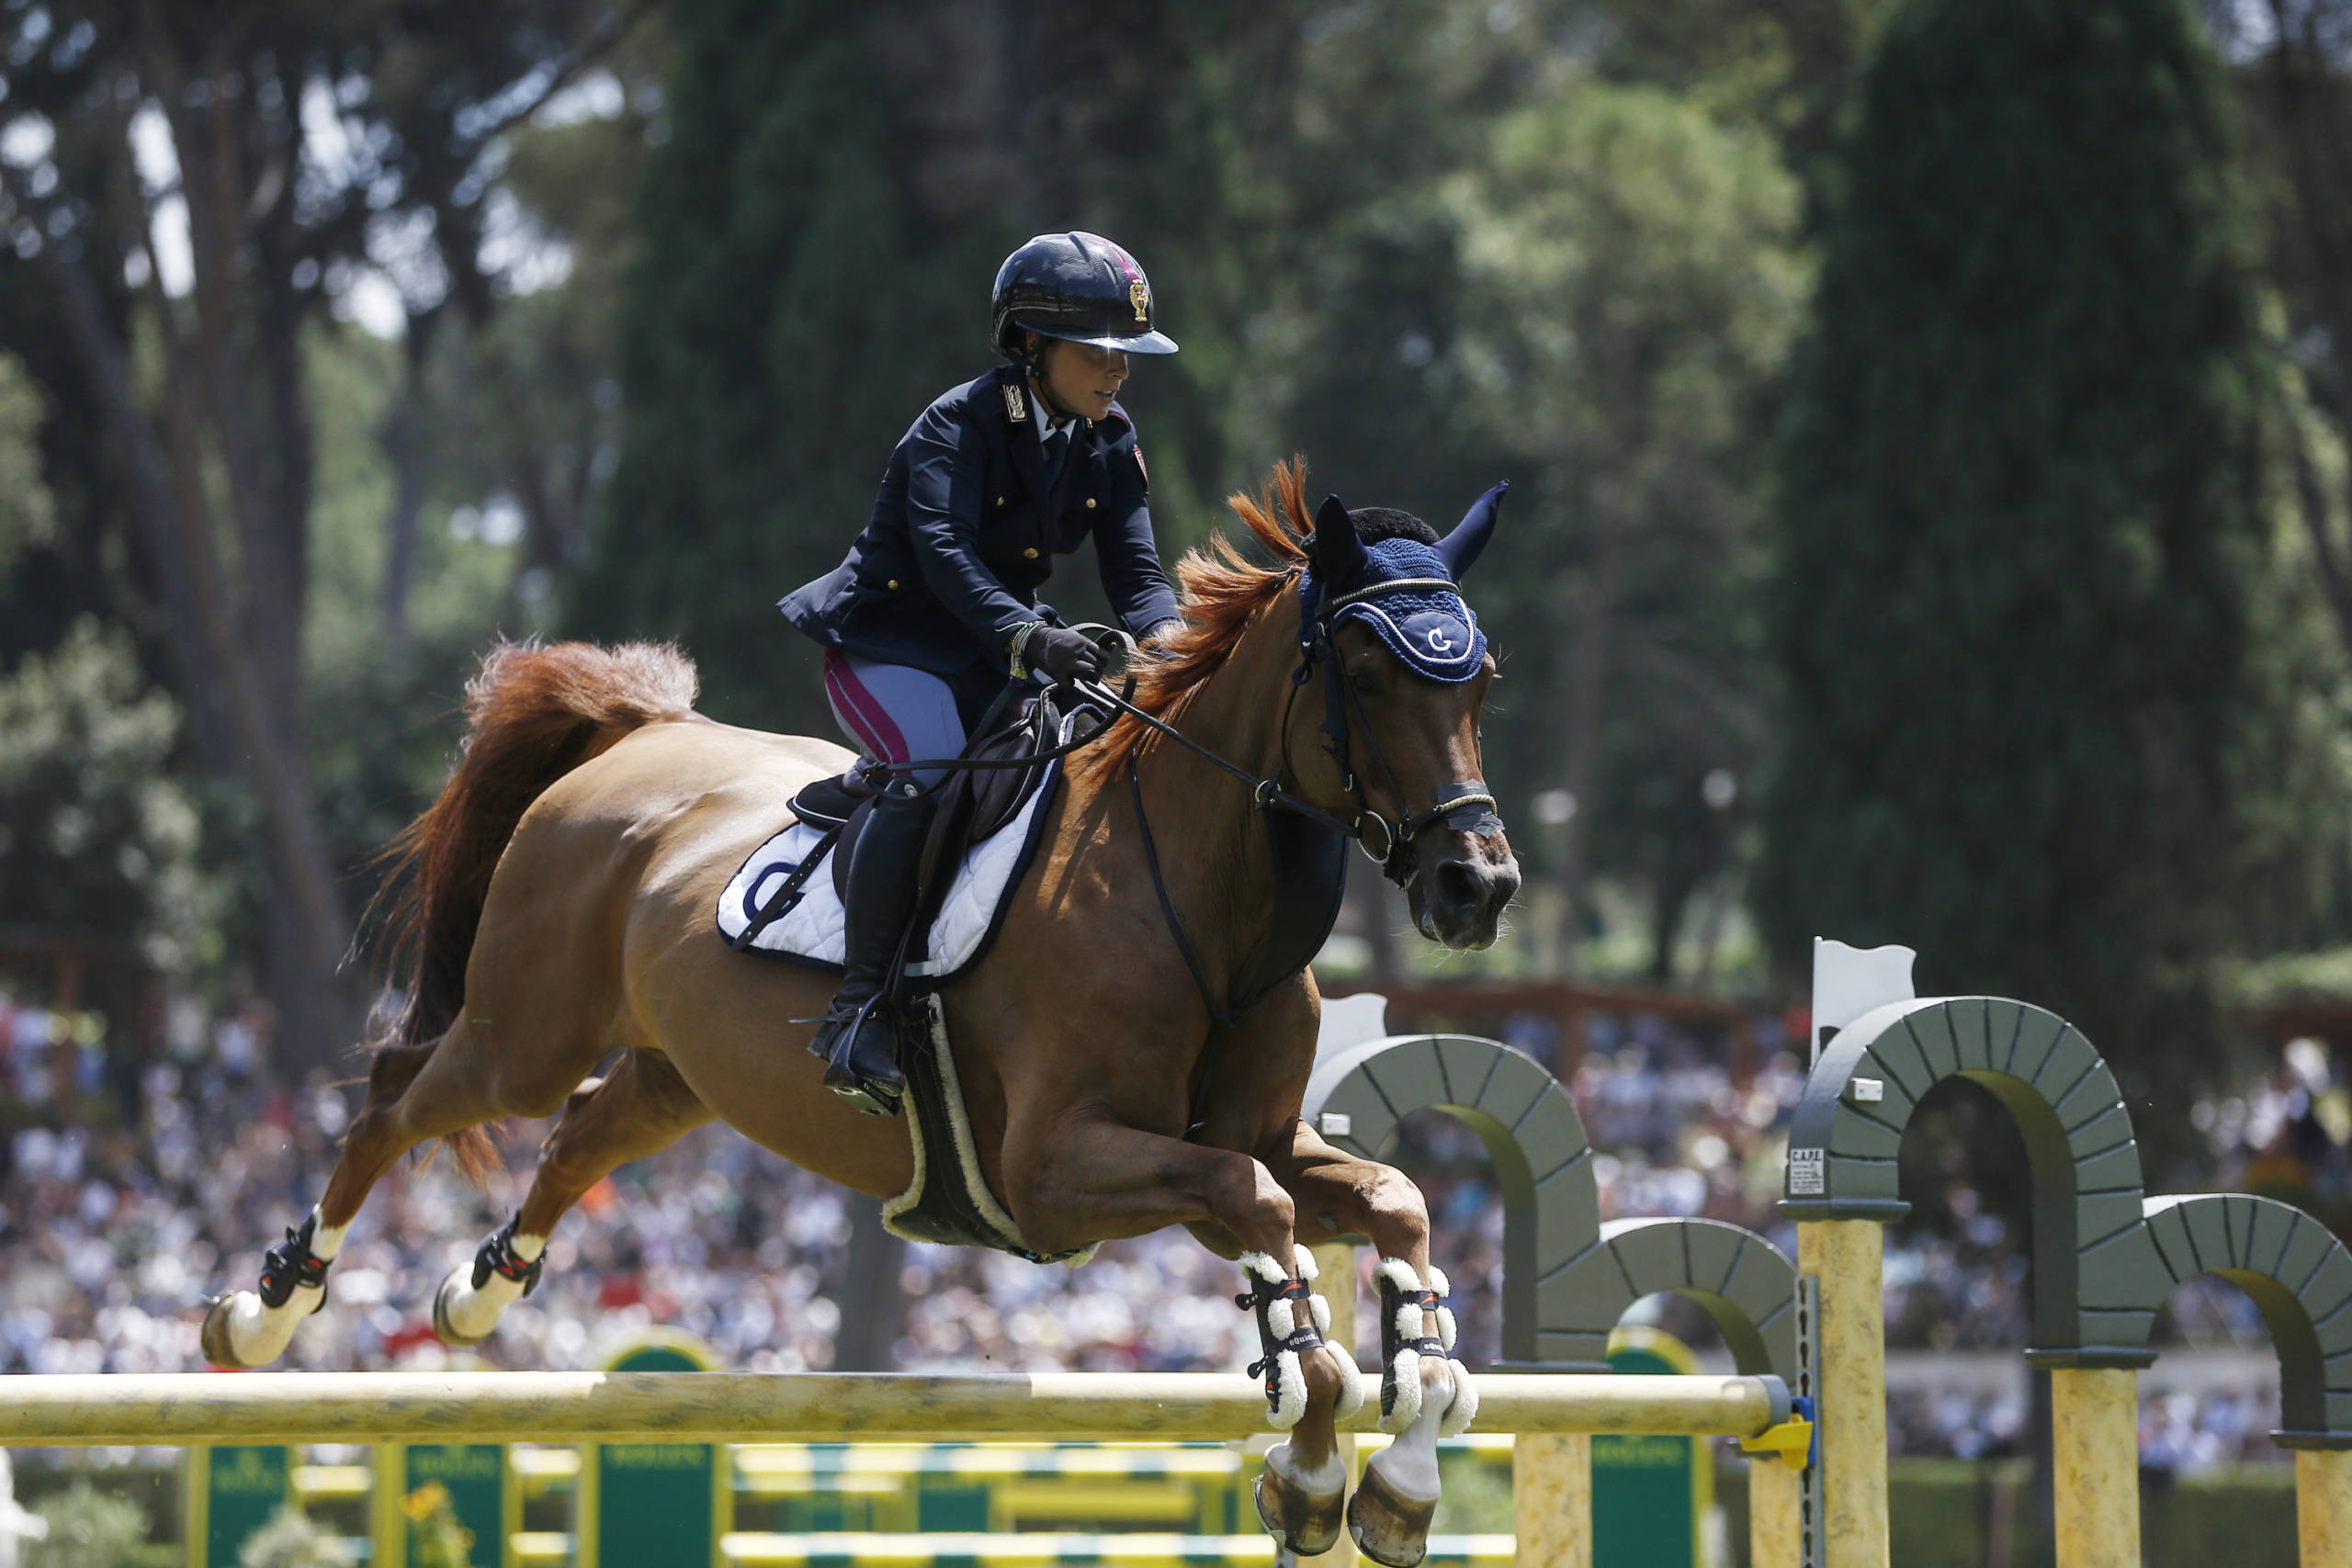 Equitazione, Mondiali salto 2022: parte bene l’Italia nella prima prova. Garofalo dodicesimo, Ciriesi venticinquesima